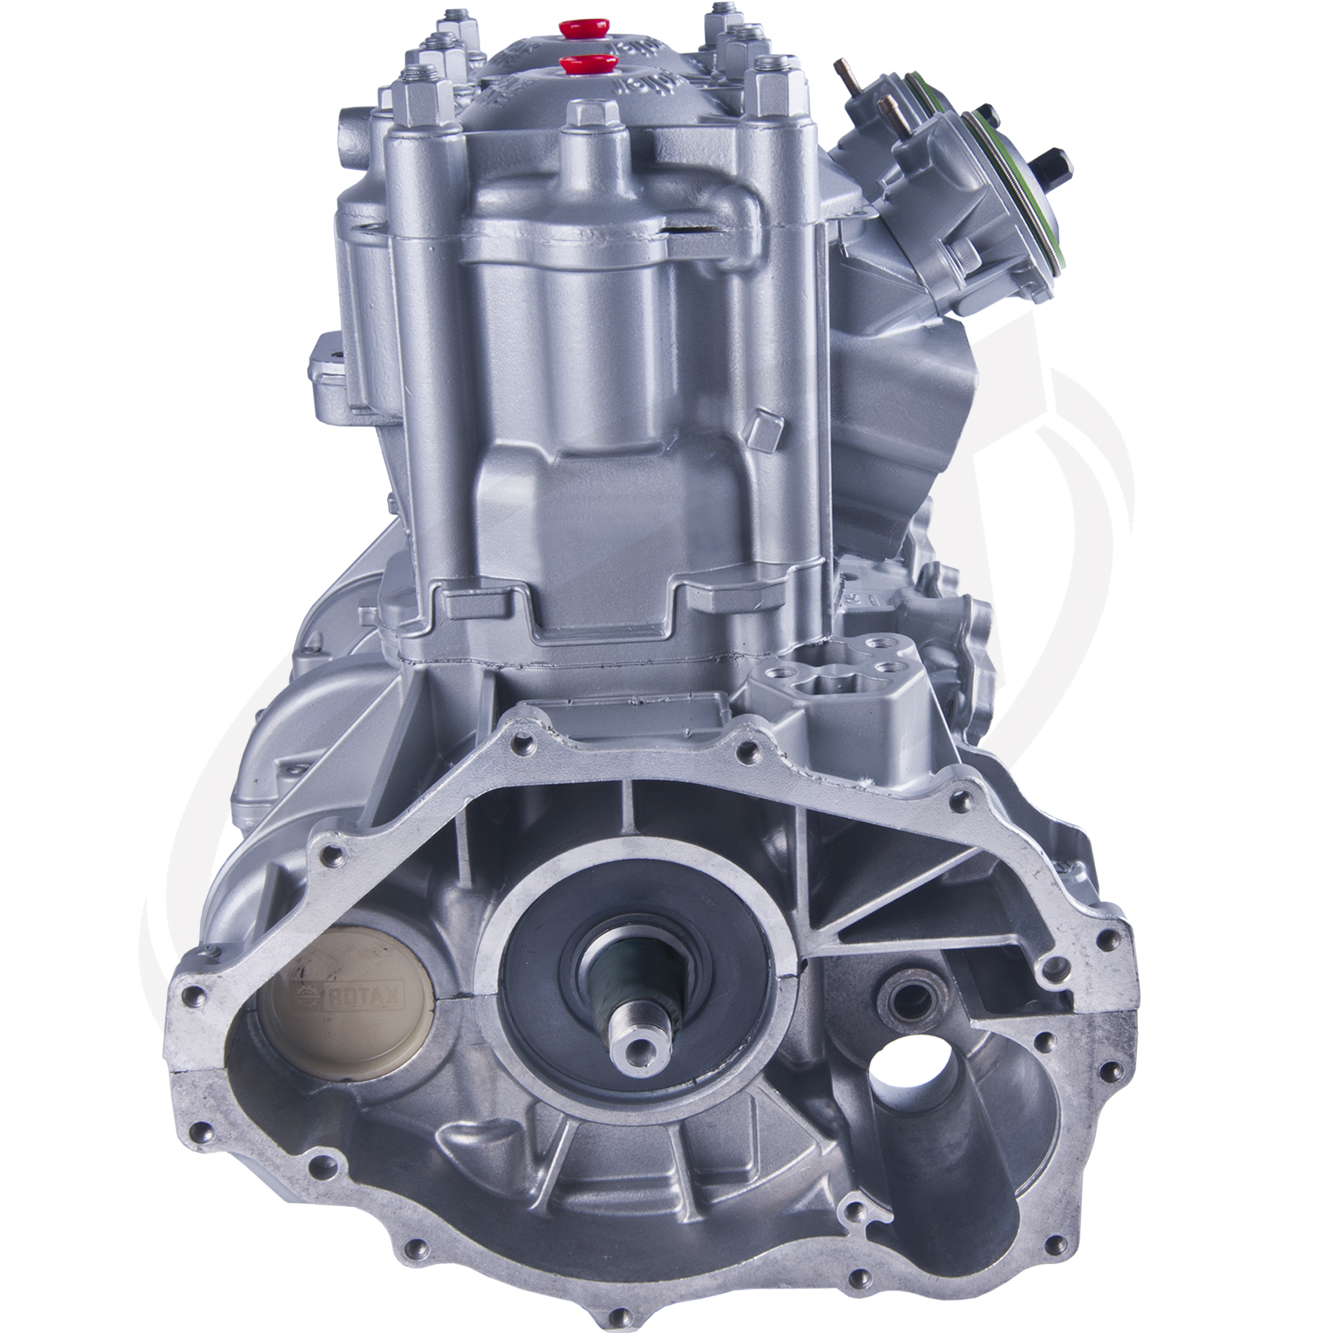 Engine for Sea-Doo 951 /947 Silver GSX LTD /GTX /XP LTD /VSP LTD /Sport LE RX /LRV 1998-2003: